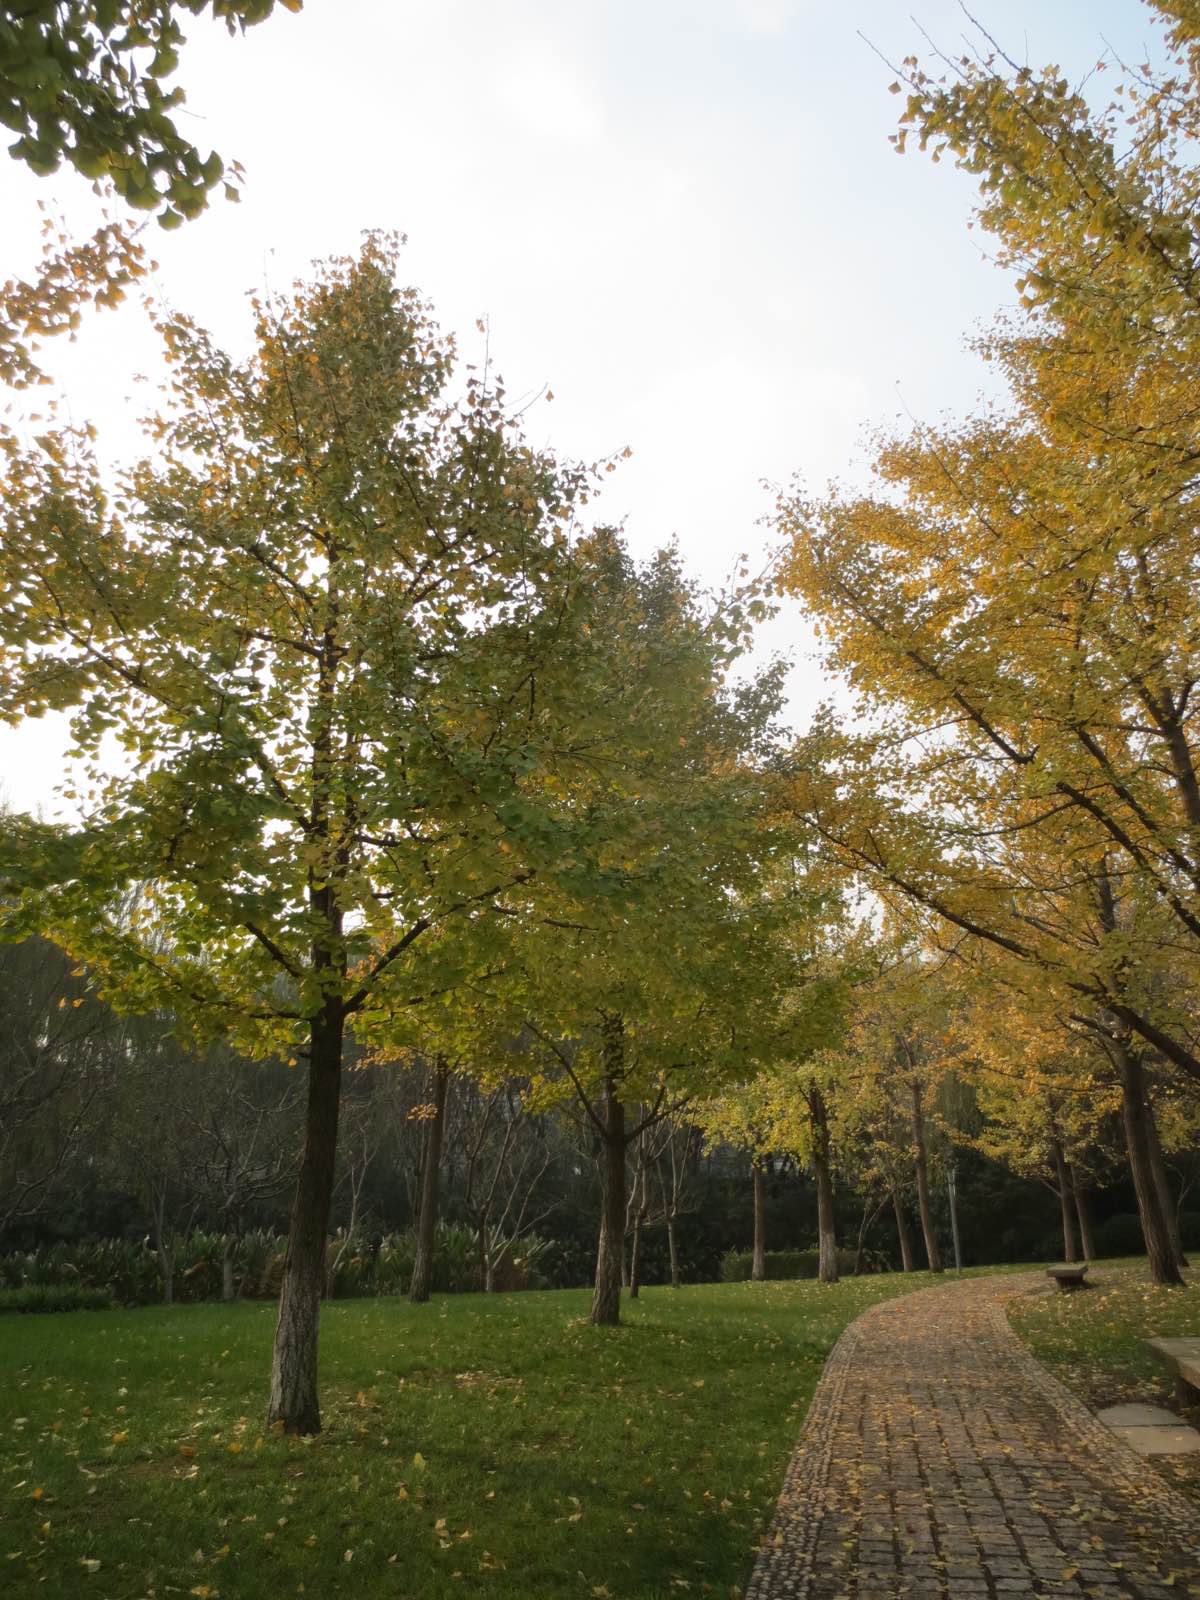 深秋的公园人好少，可能因为不是周末的关系吧，这样倒是可以安静的享受秋的